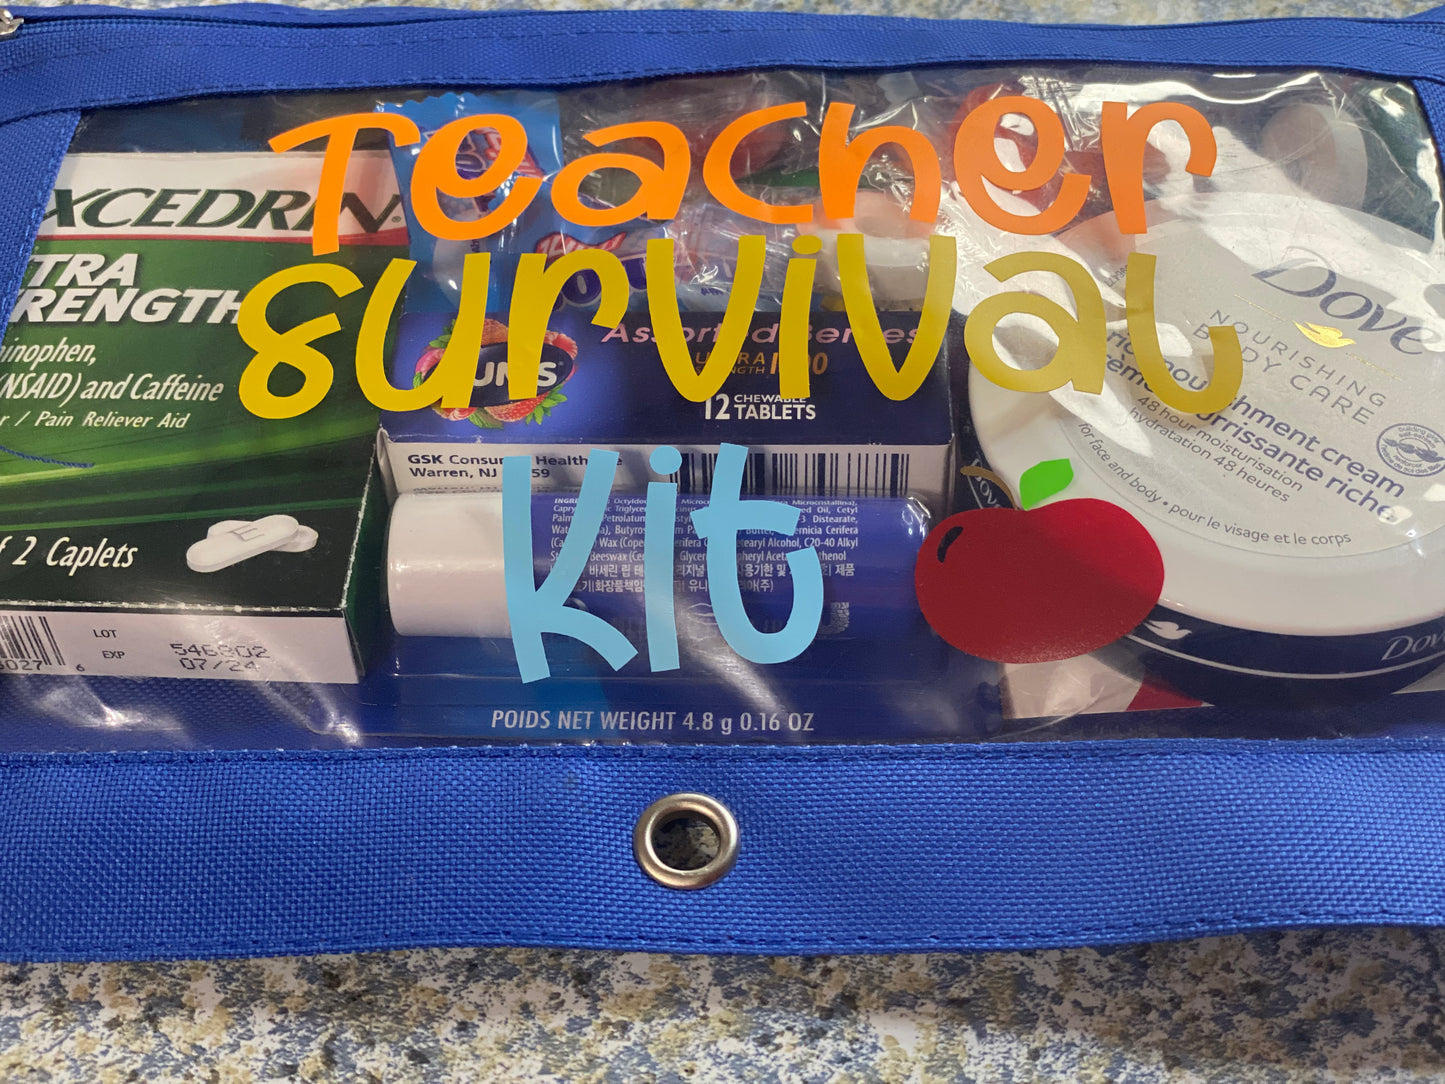 Teacher Survival Kit Pencil Pouch